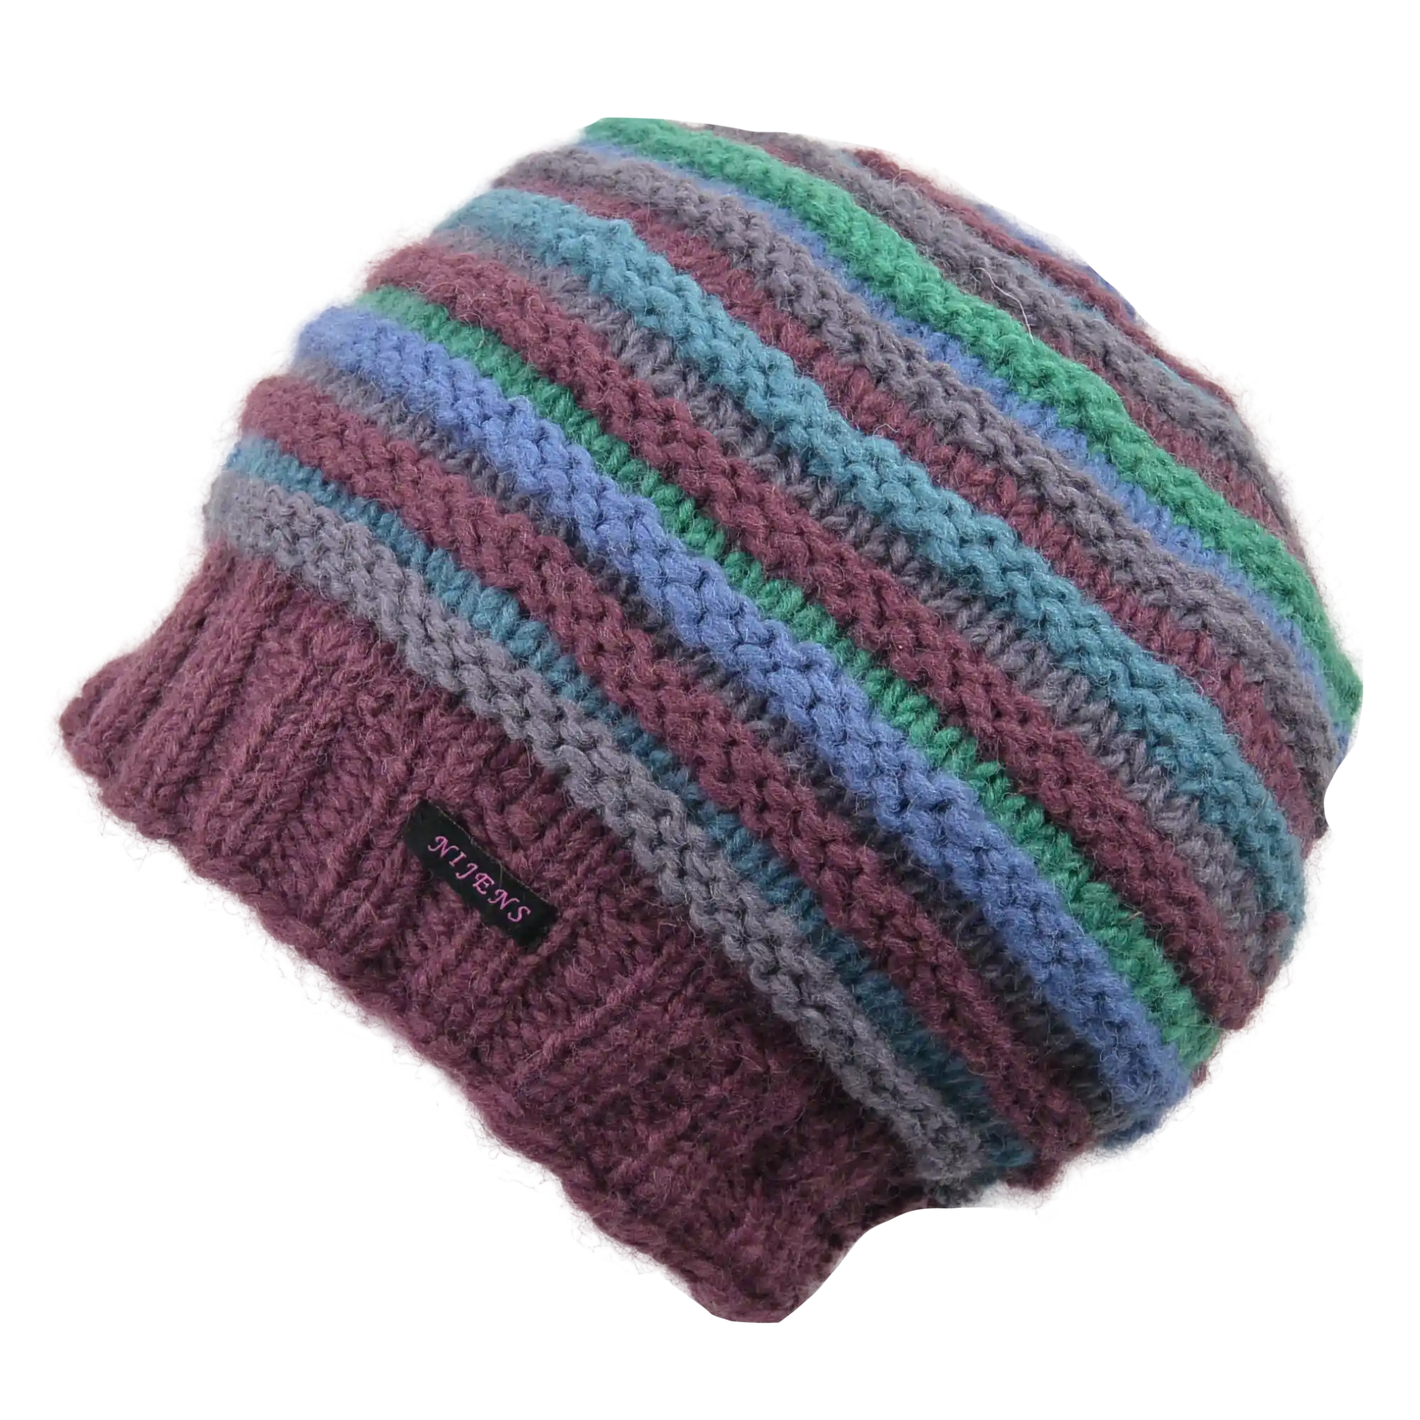 Rippenmütze, handgestrickte Wollmütze aus 100% Schurwolle mit farblich unterschiedlichem Rippenstrick. Lila, Blau, Grün.